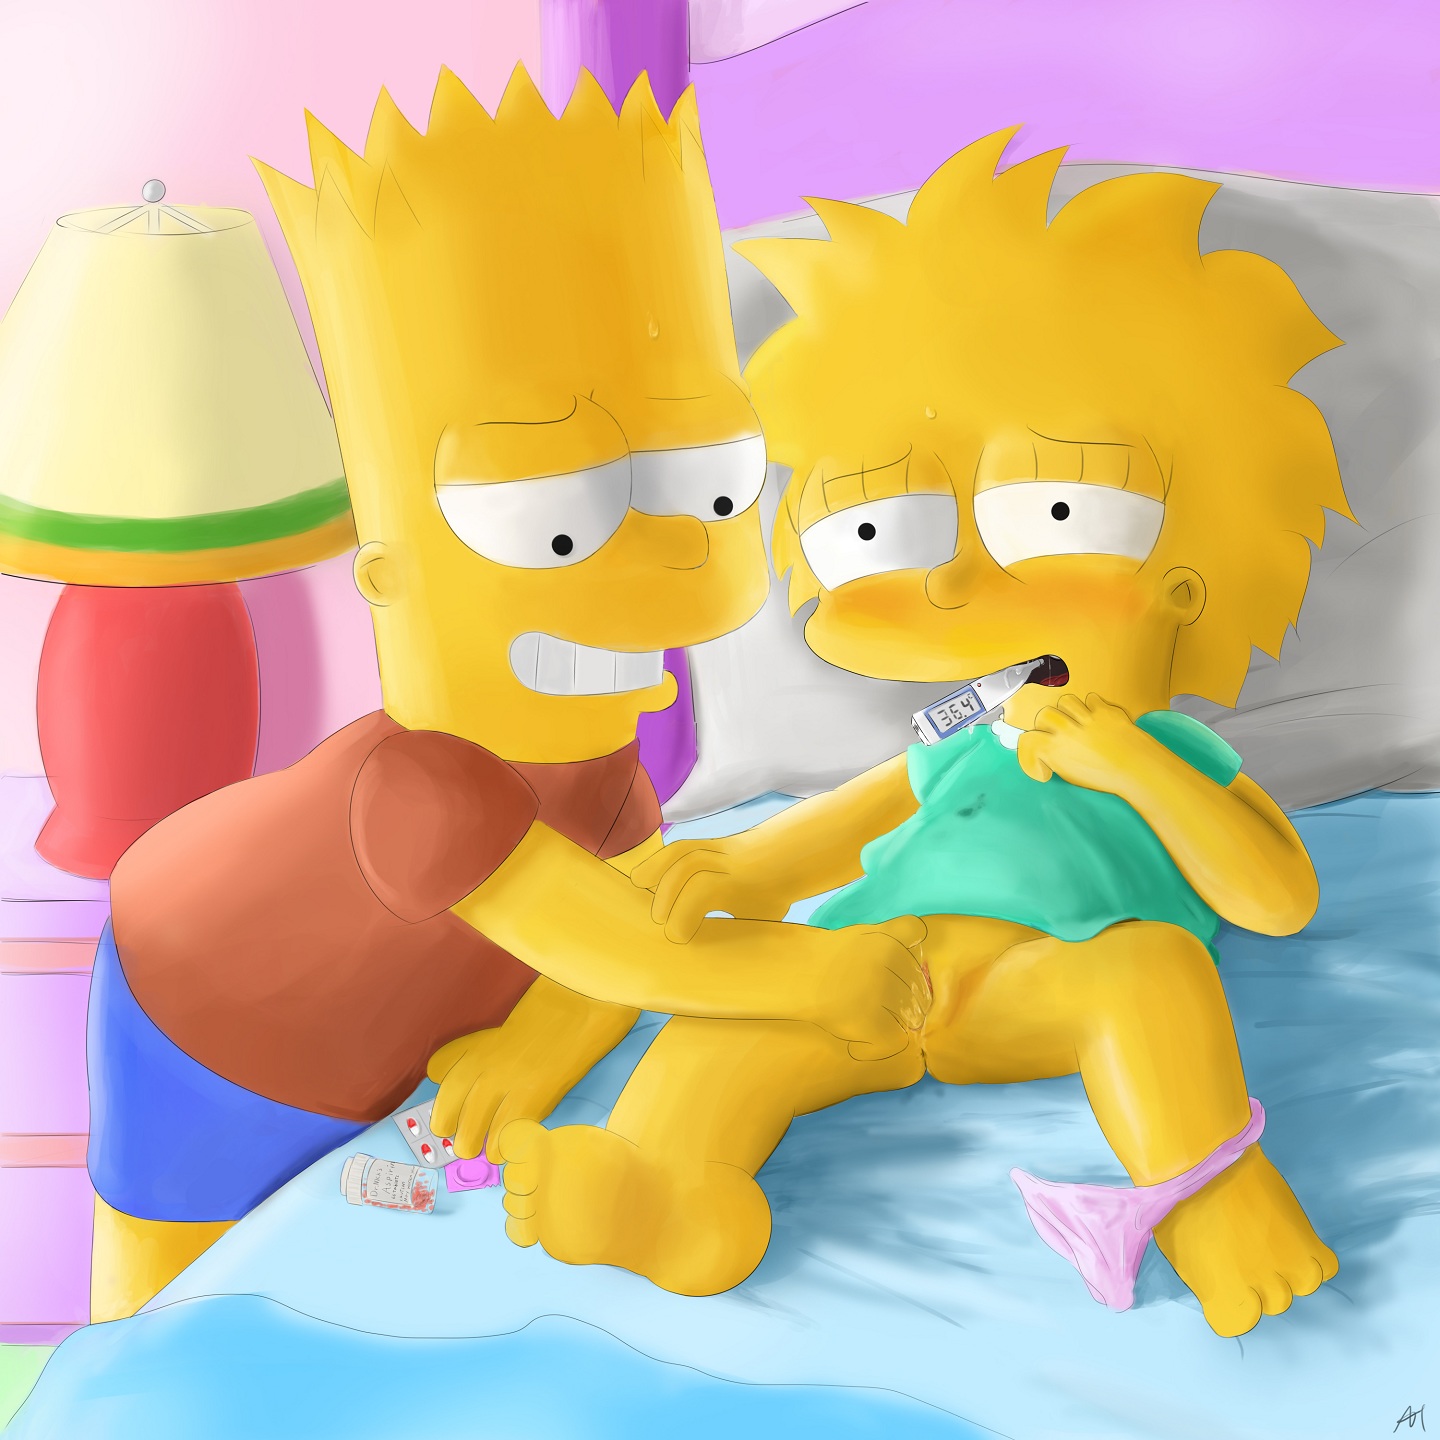 Lisa and bart simpson porn